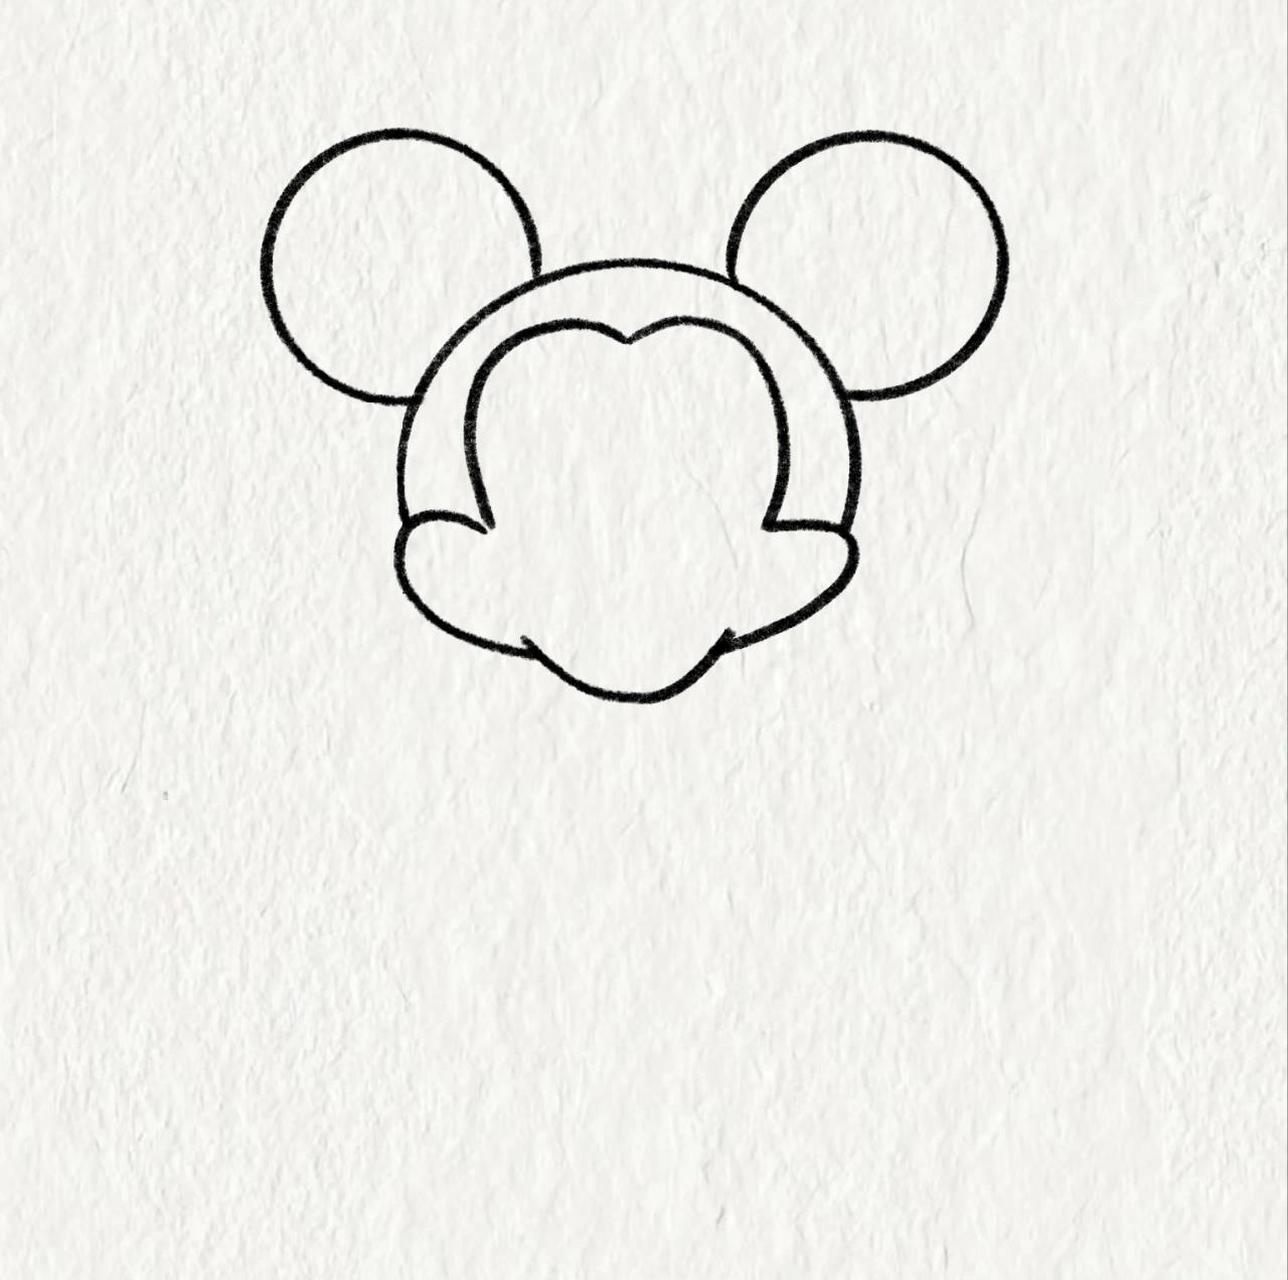 米老鼠的简笔画怎么画图片